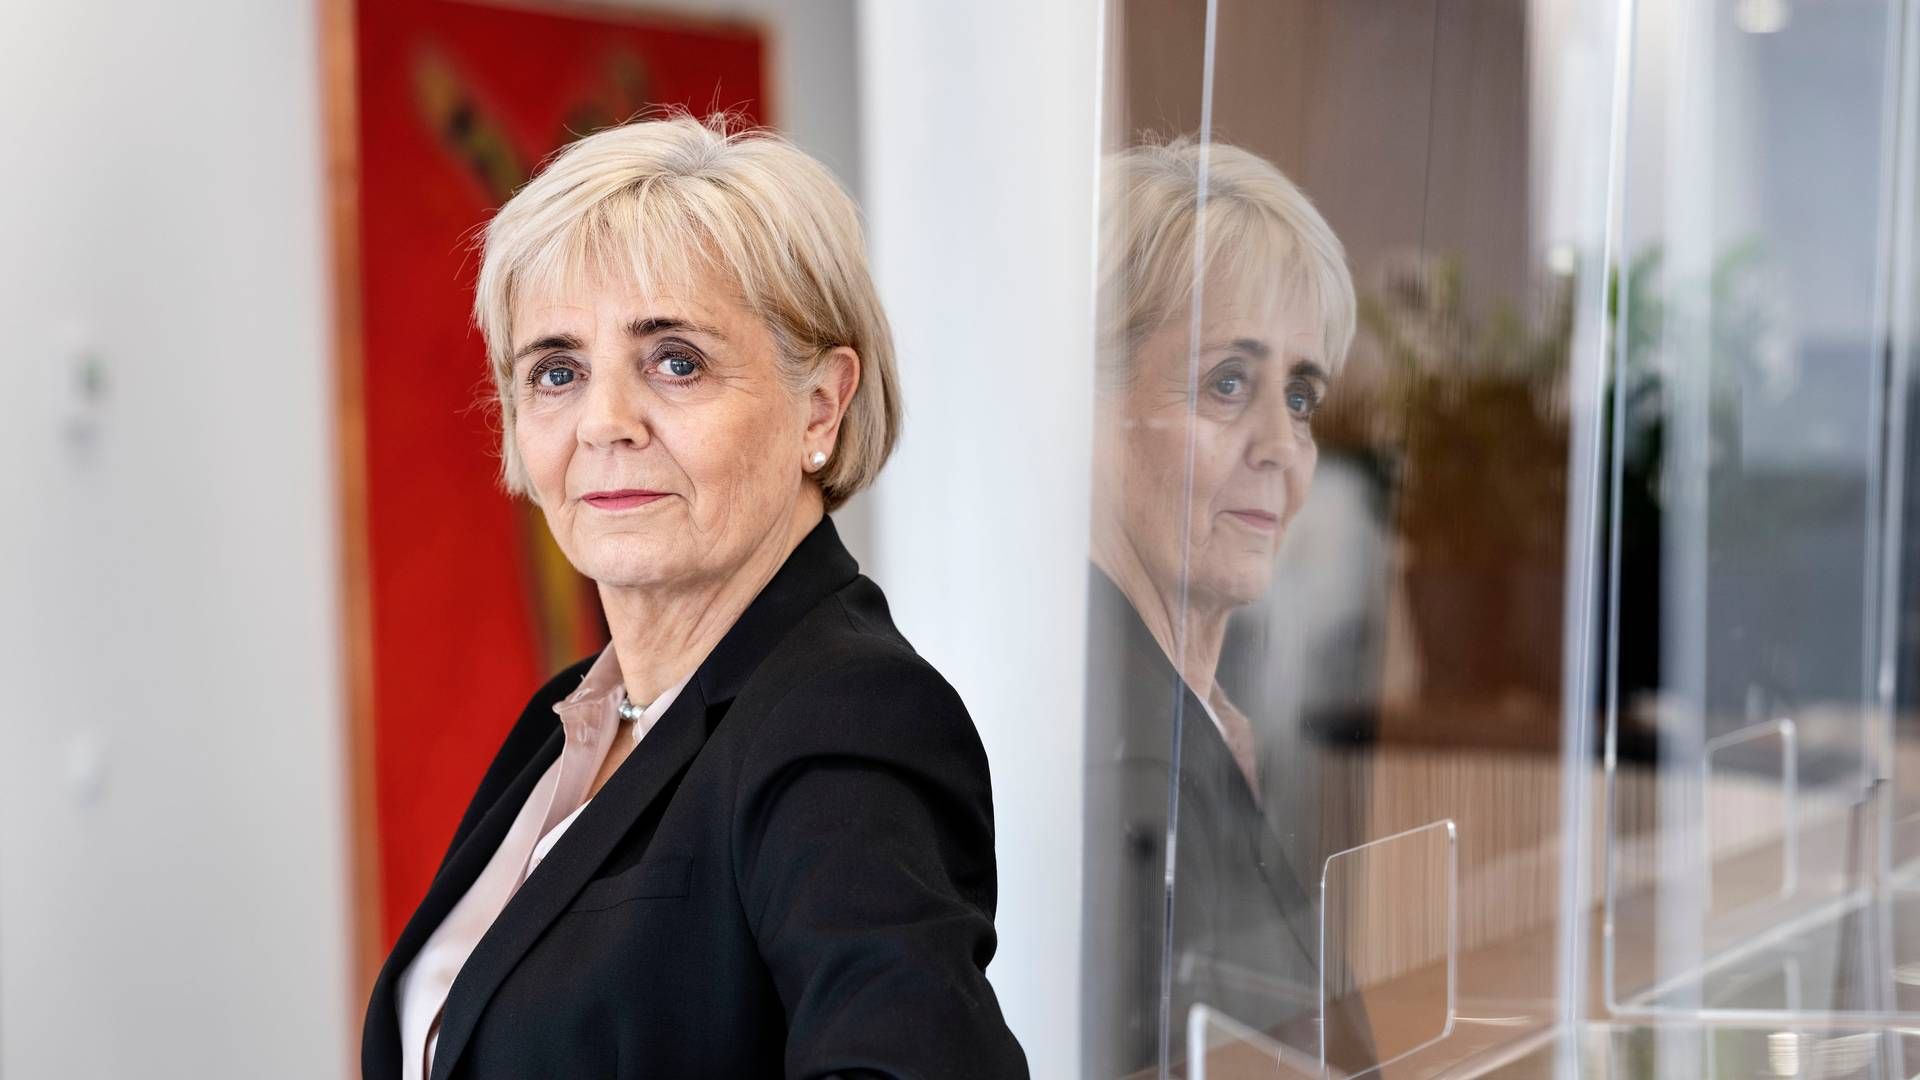 Det er vigtigt at anerkende, at banker har aktionærer, der skal have et afkast, siger Karen Frøs, adm. direktør i Sydbank, til Berlingske. | Foto: Sydbank-pr